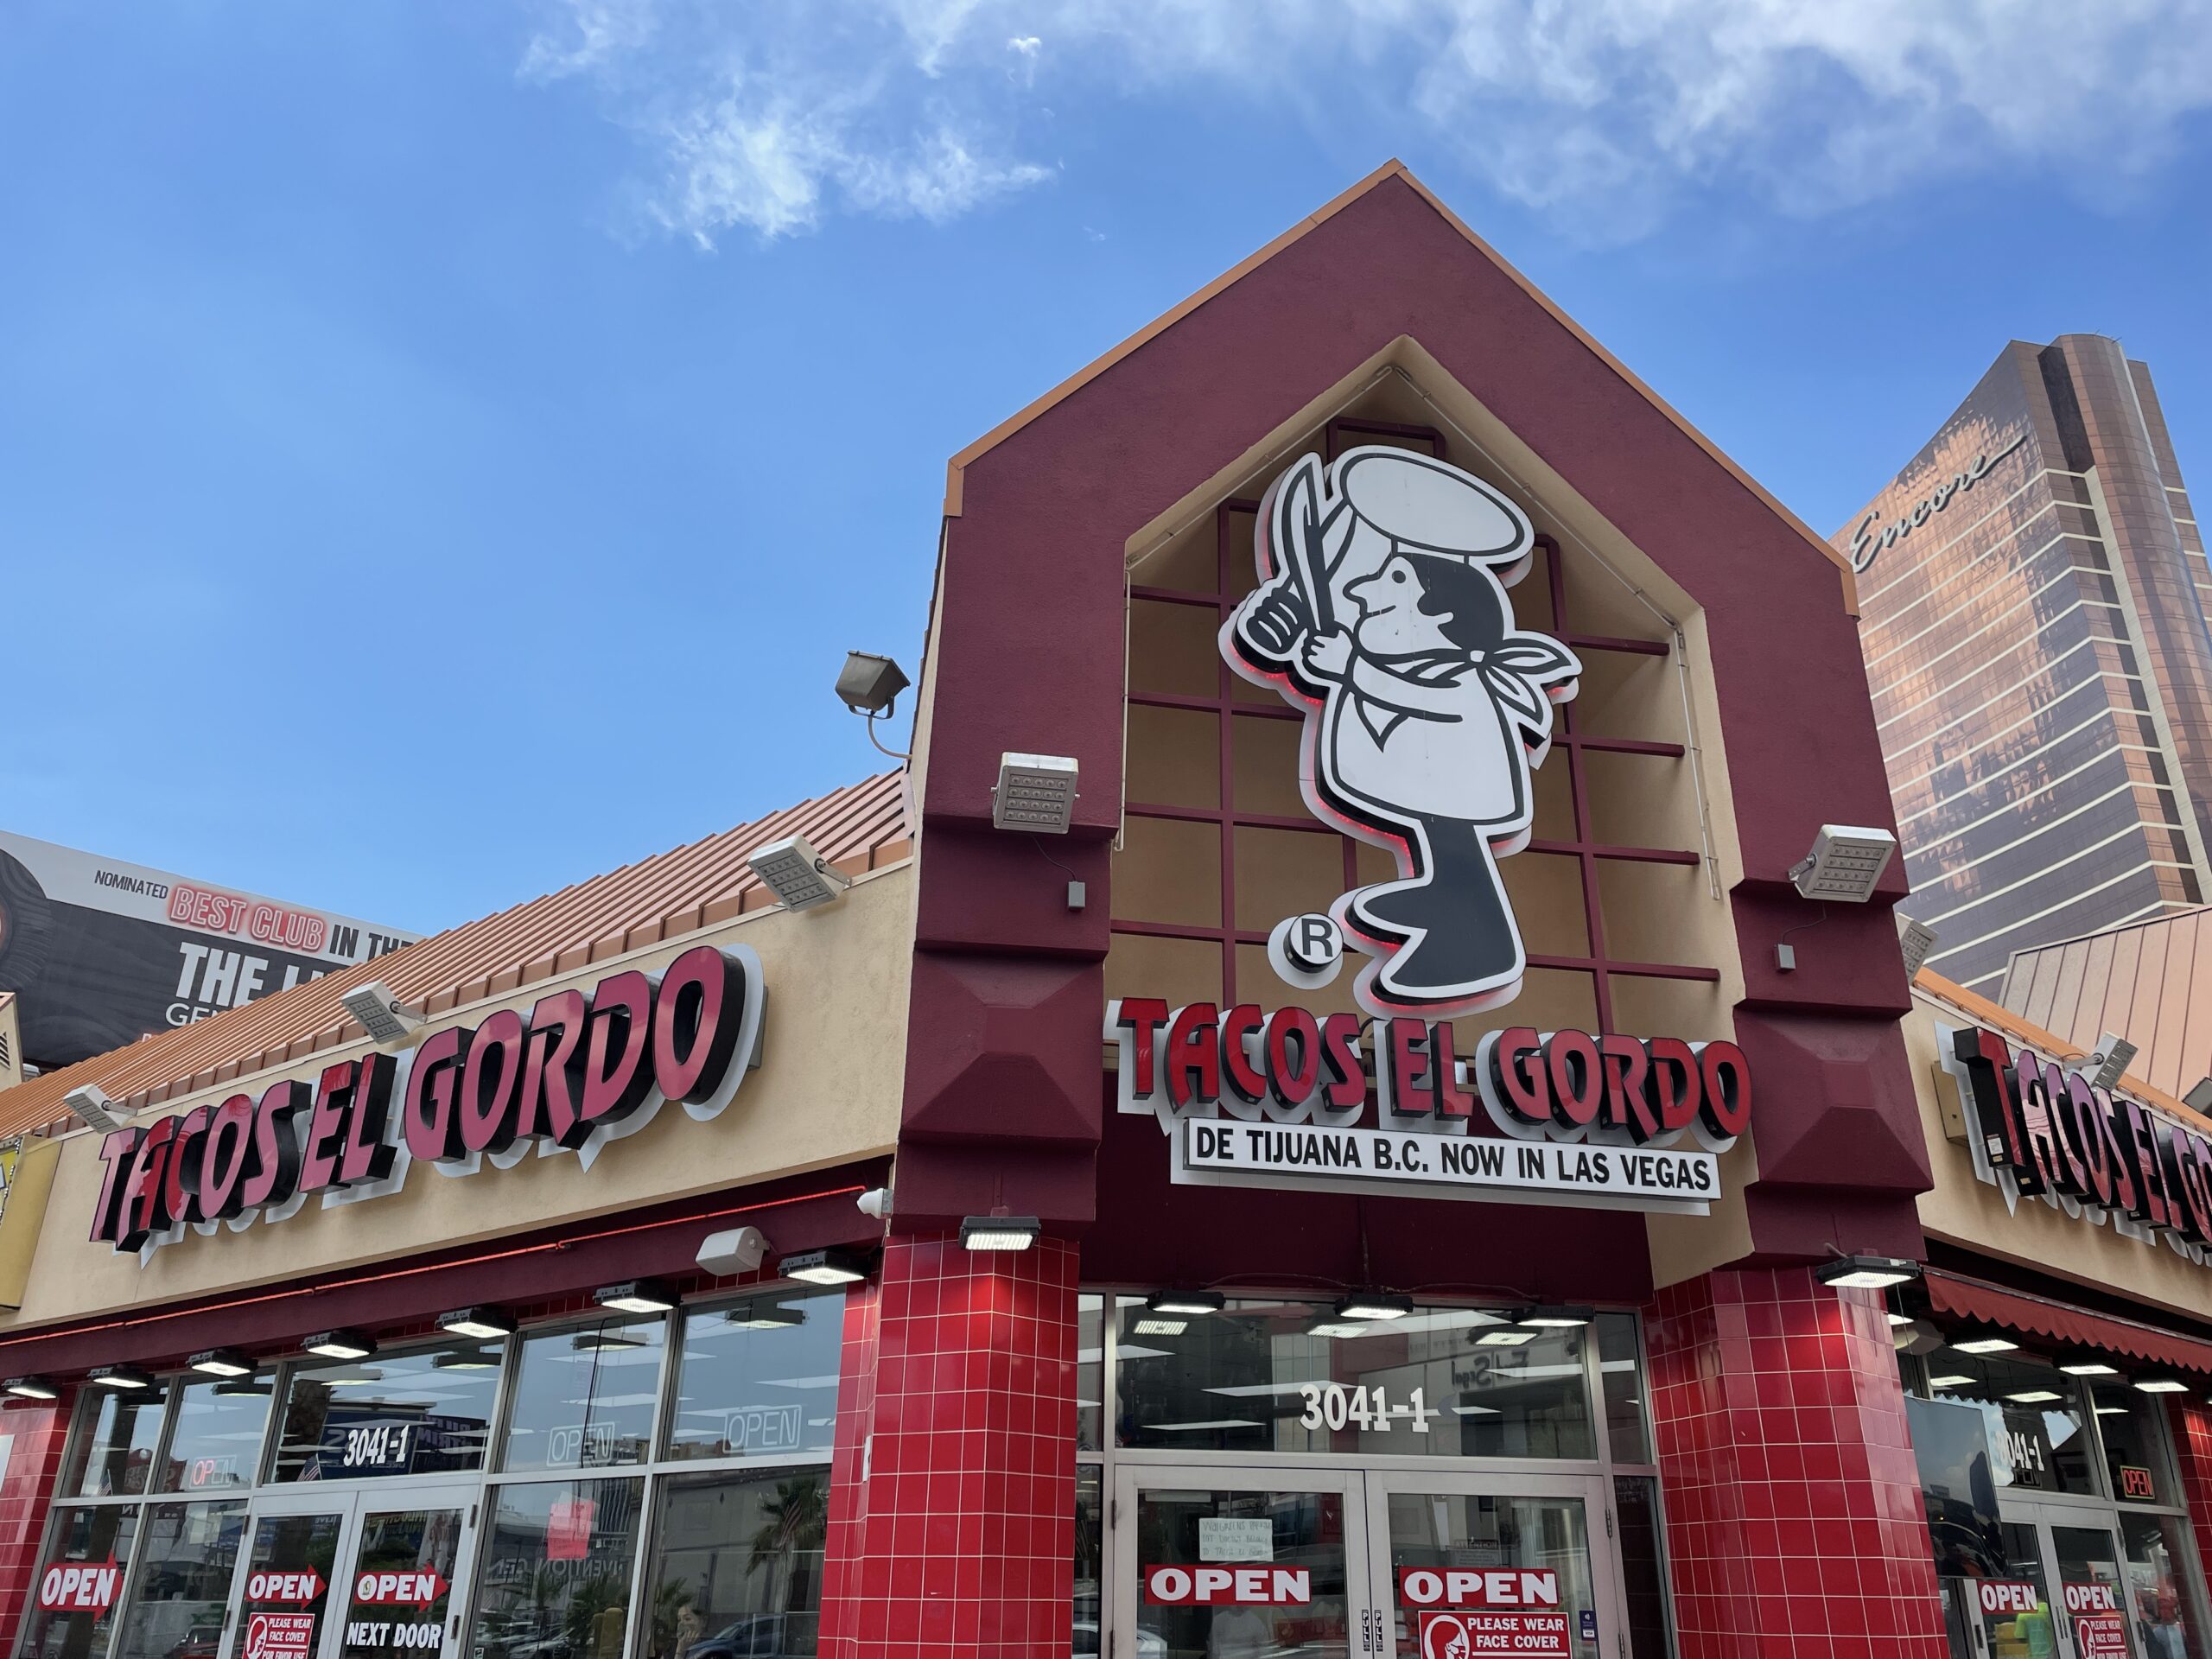 ¡Aquí le mostramos cómo hacer un pedido en Tacos El Gordo Las Vegas y un vistazo a los tacos!